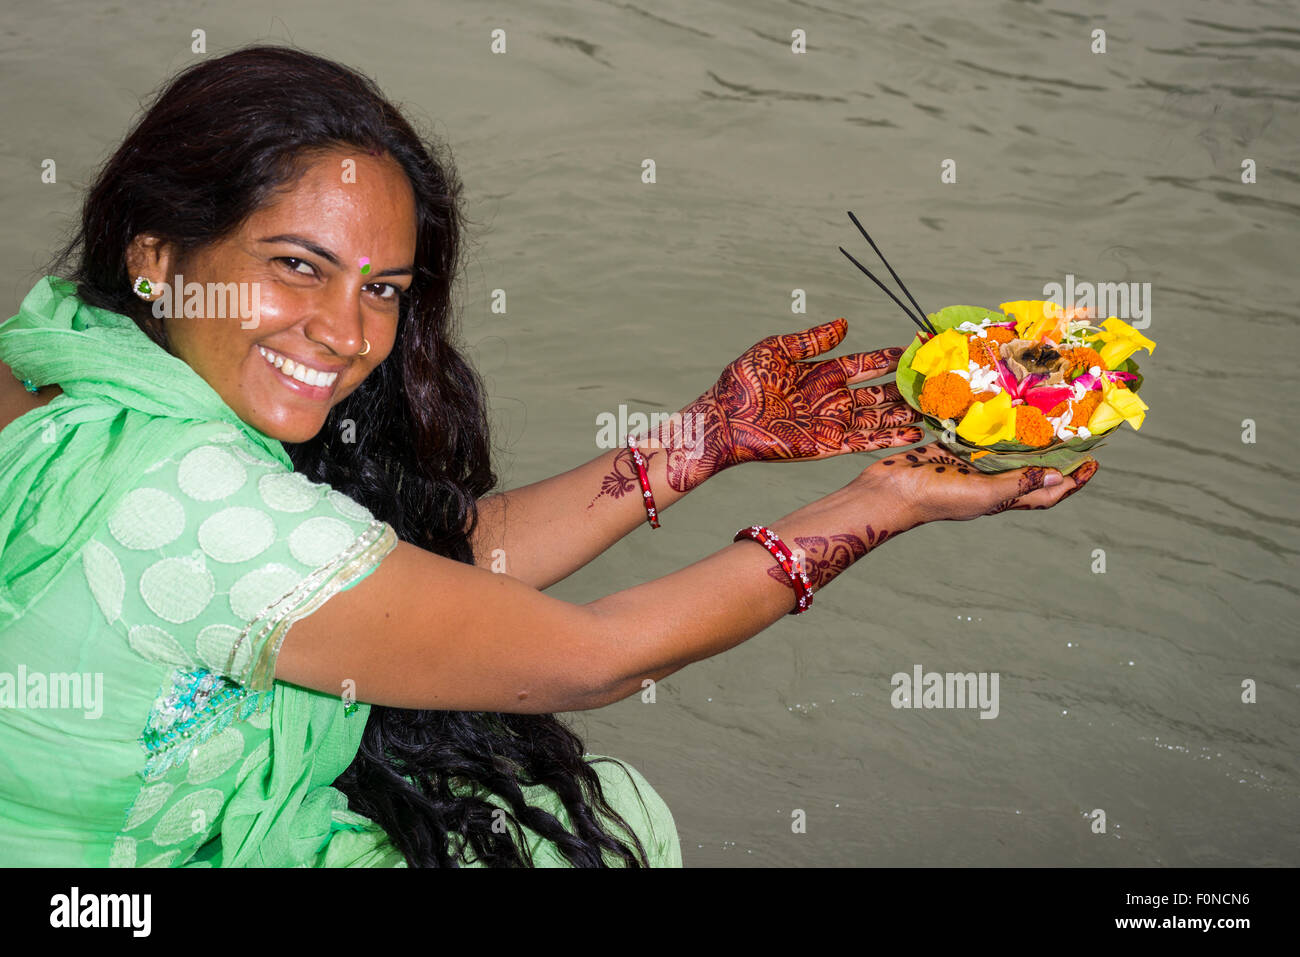 Una mujer joven con largo cabello negro, manos pintadas con henna y un vestido verde está celebrando un deepak, la ofrenda de flores, en los ghats Foto de stock